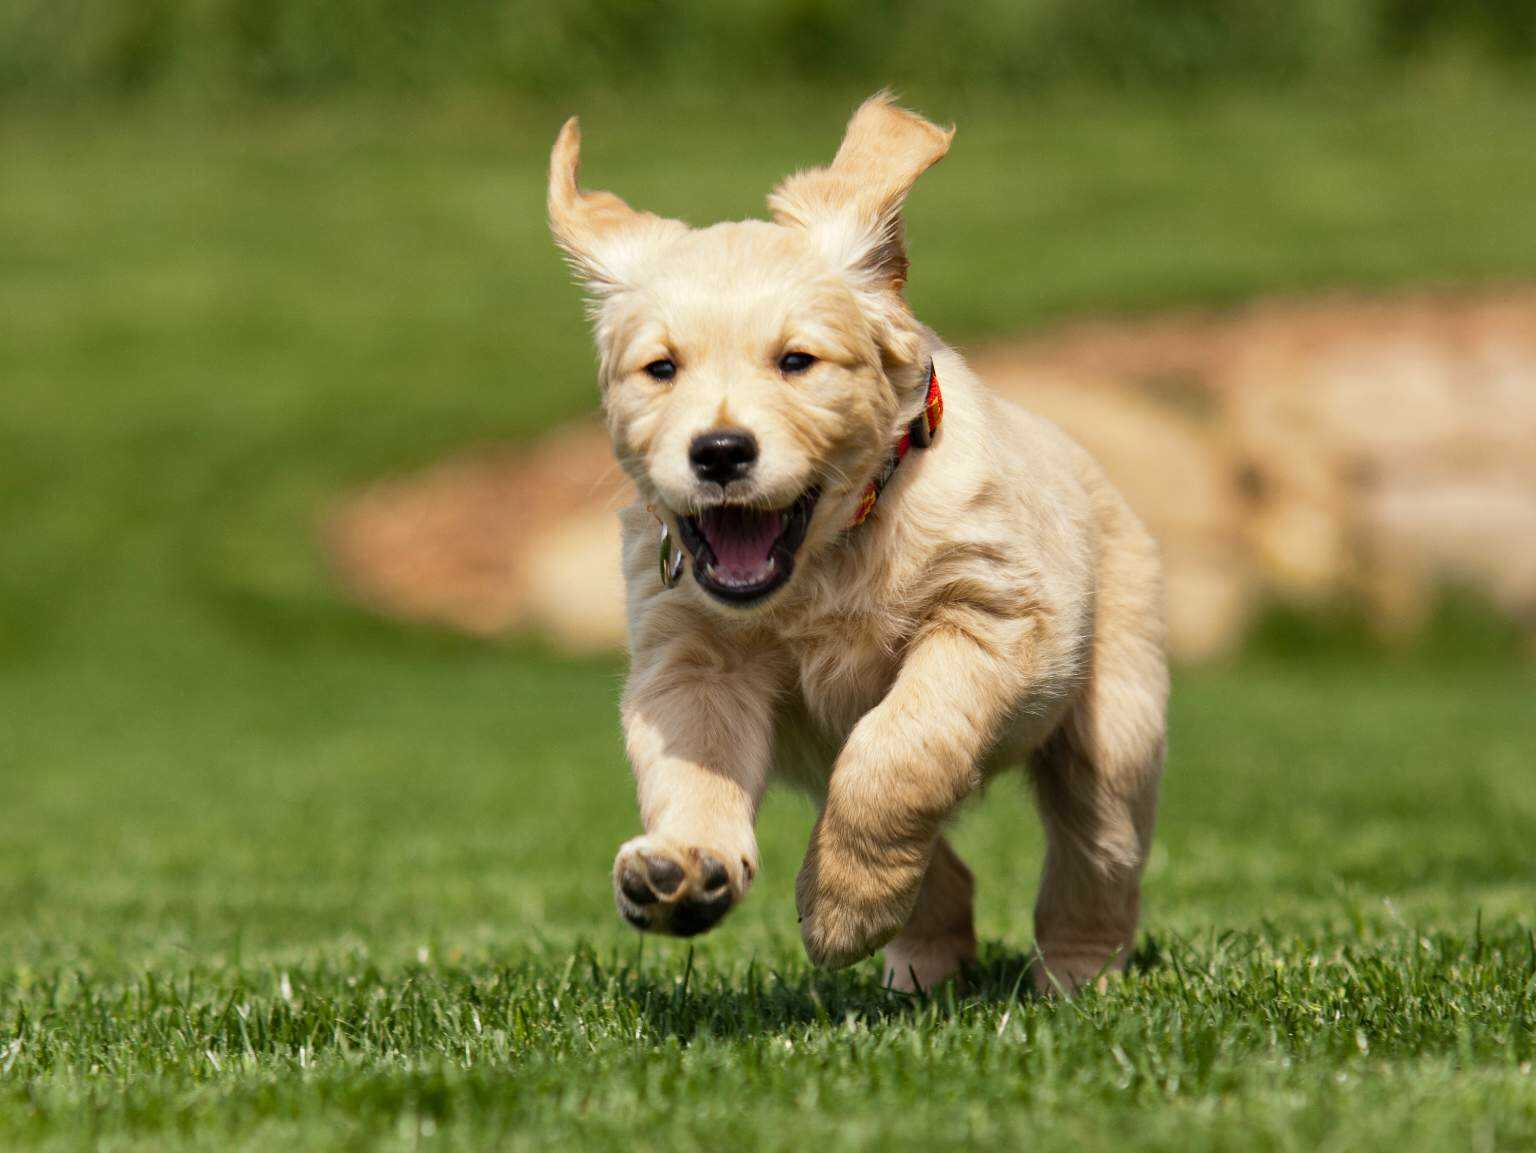 happy puppy running